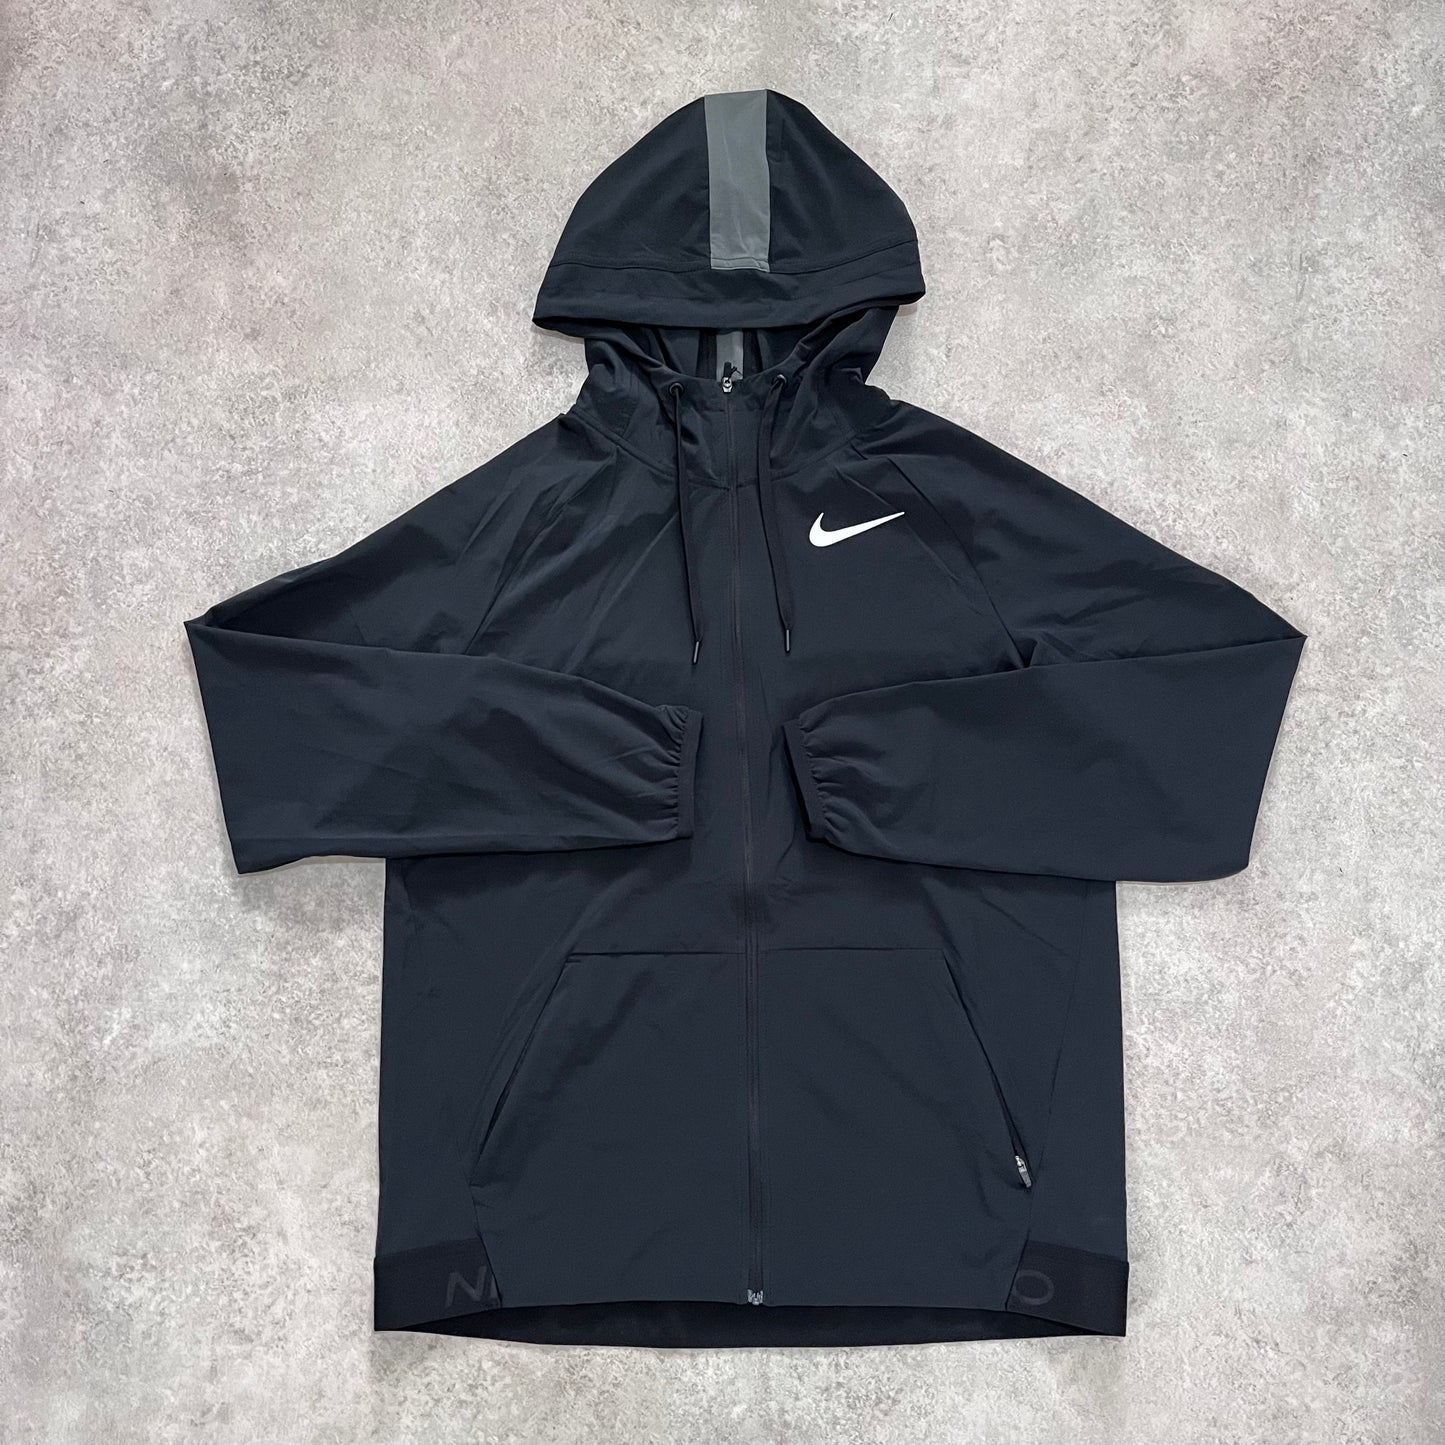 Nike Pro Flex Vent Jacket